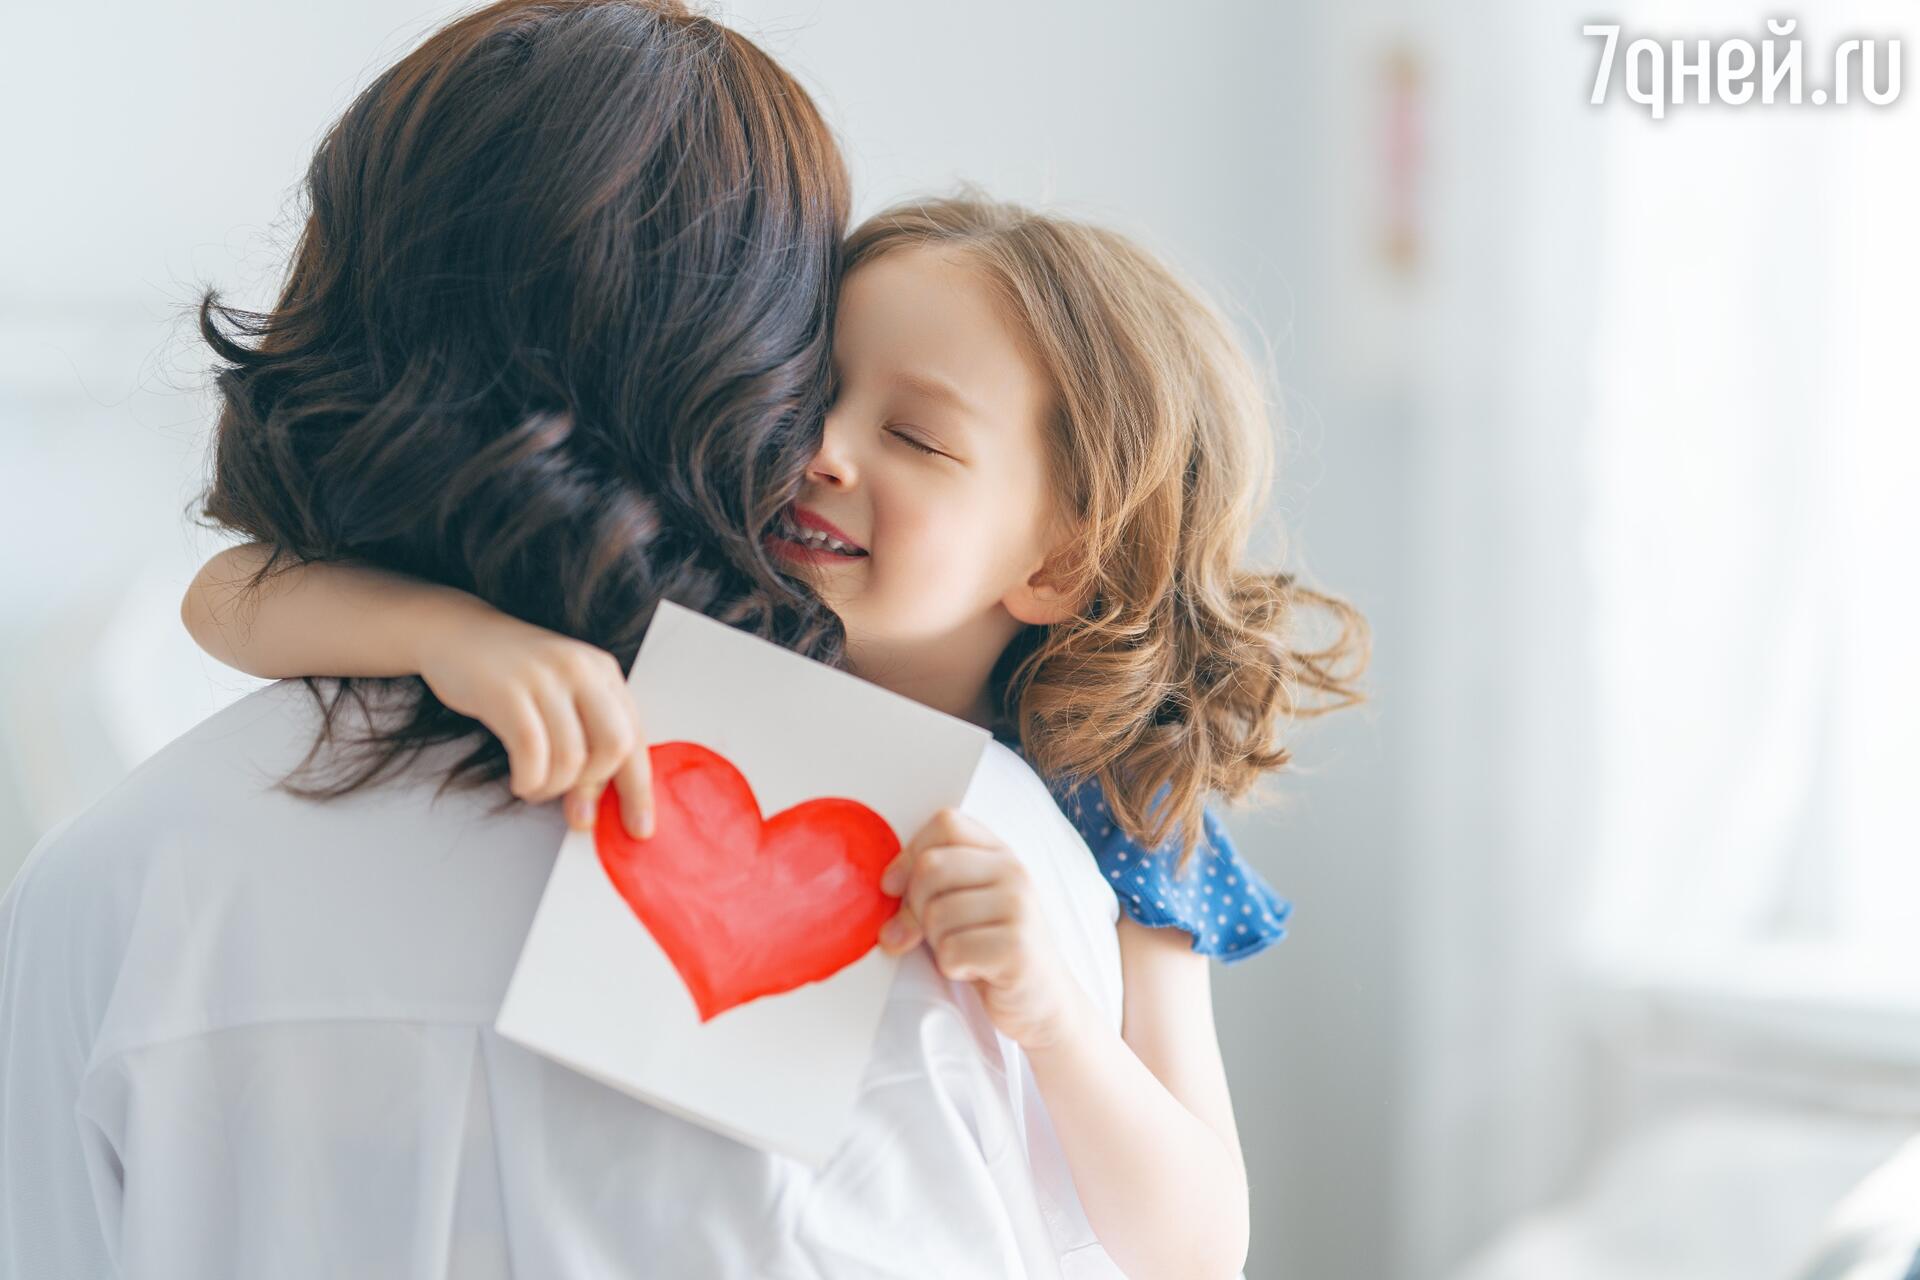 Как сформировать привязанность ребенка к родителю чтобы ребенок чувствовал себя любимым